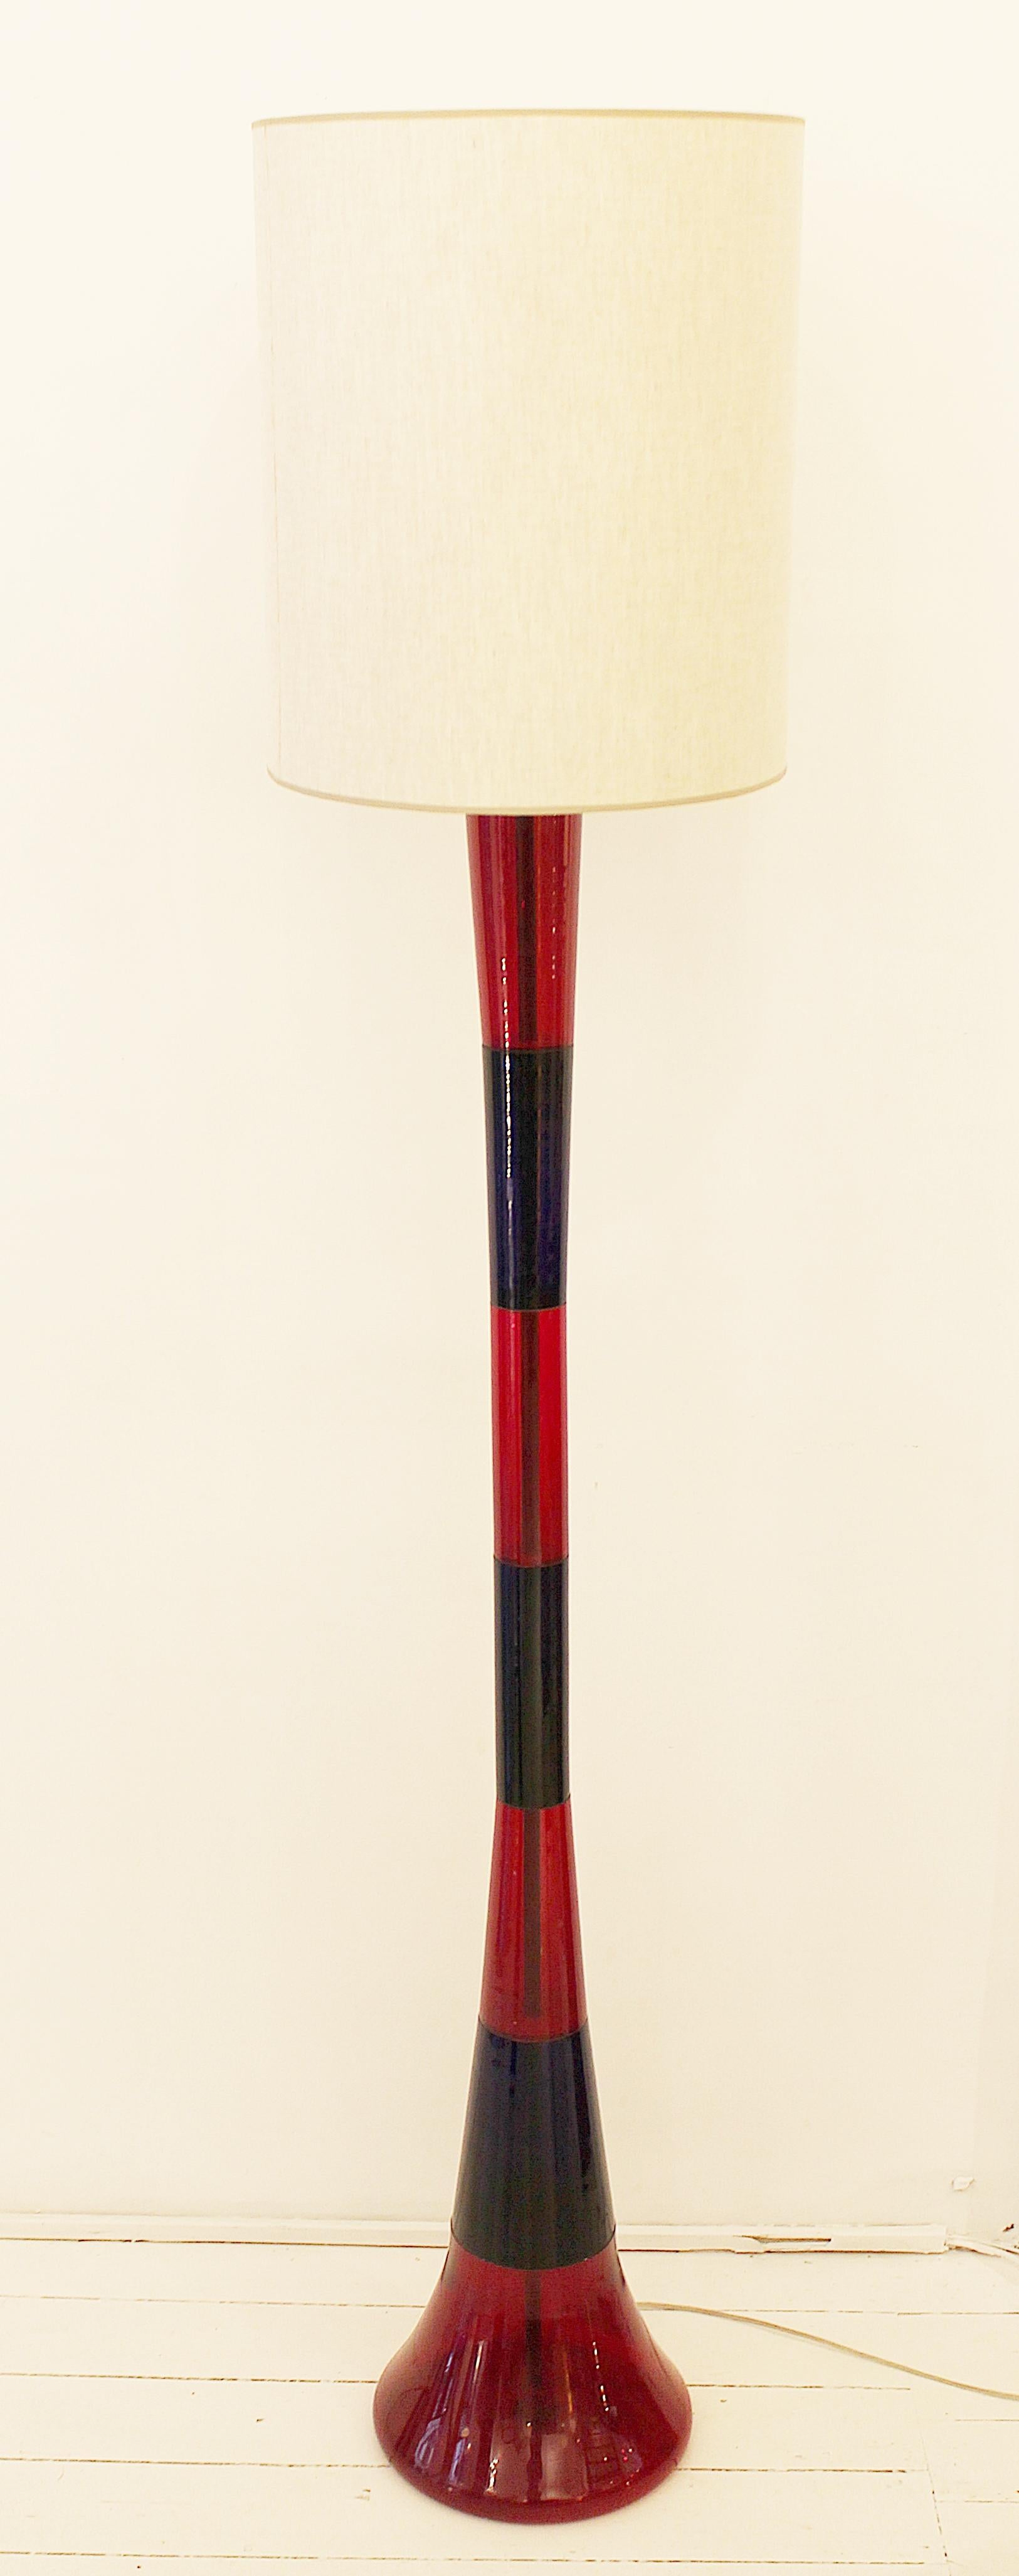 Stehlampe von Fulvio Bianconi für Venini, Italien, 1950er Jahre (Mitte des 20. Jahrhunderts)